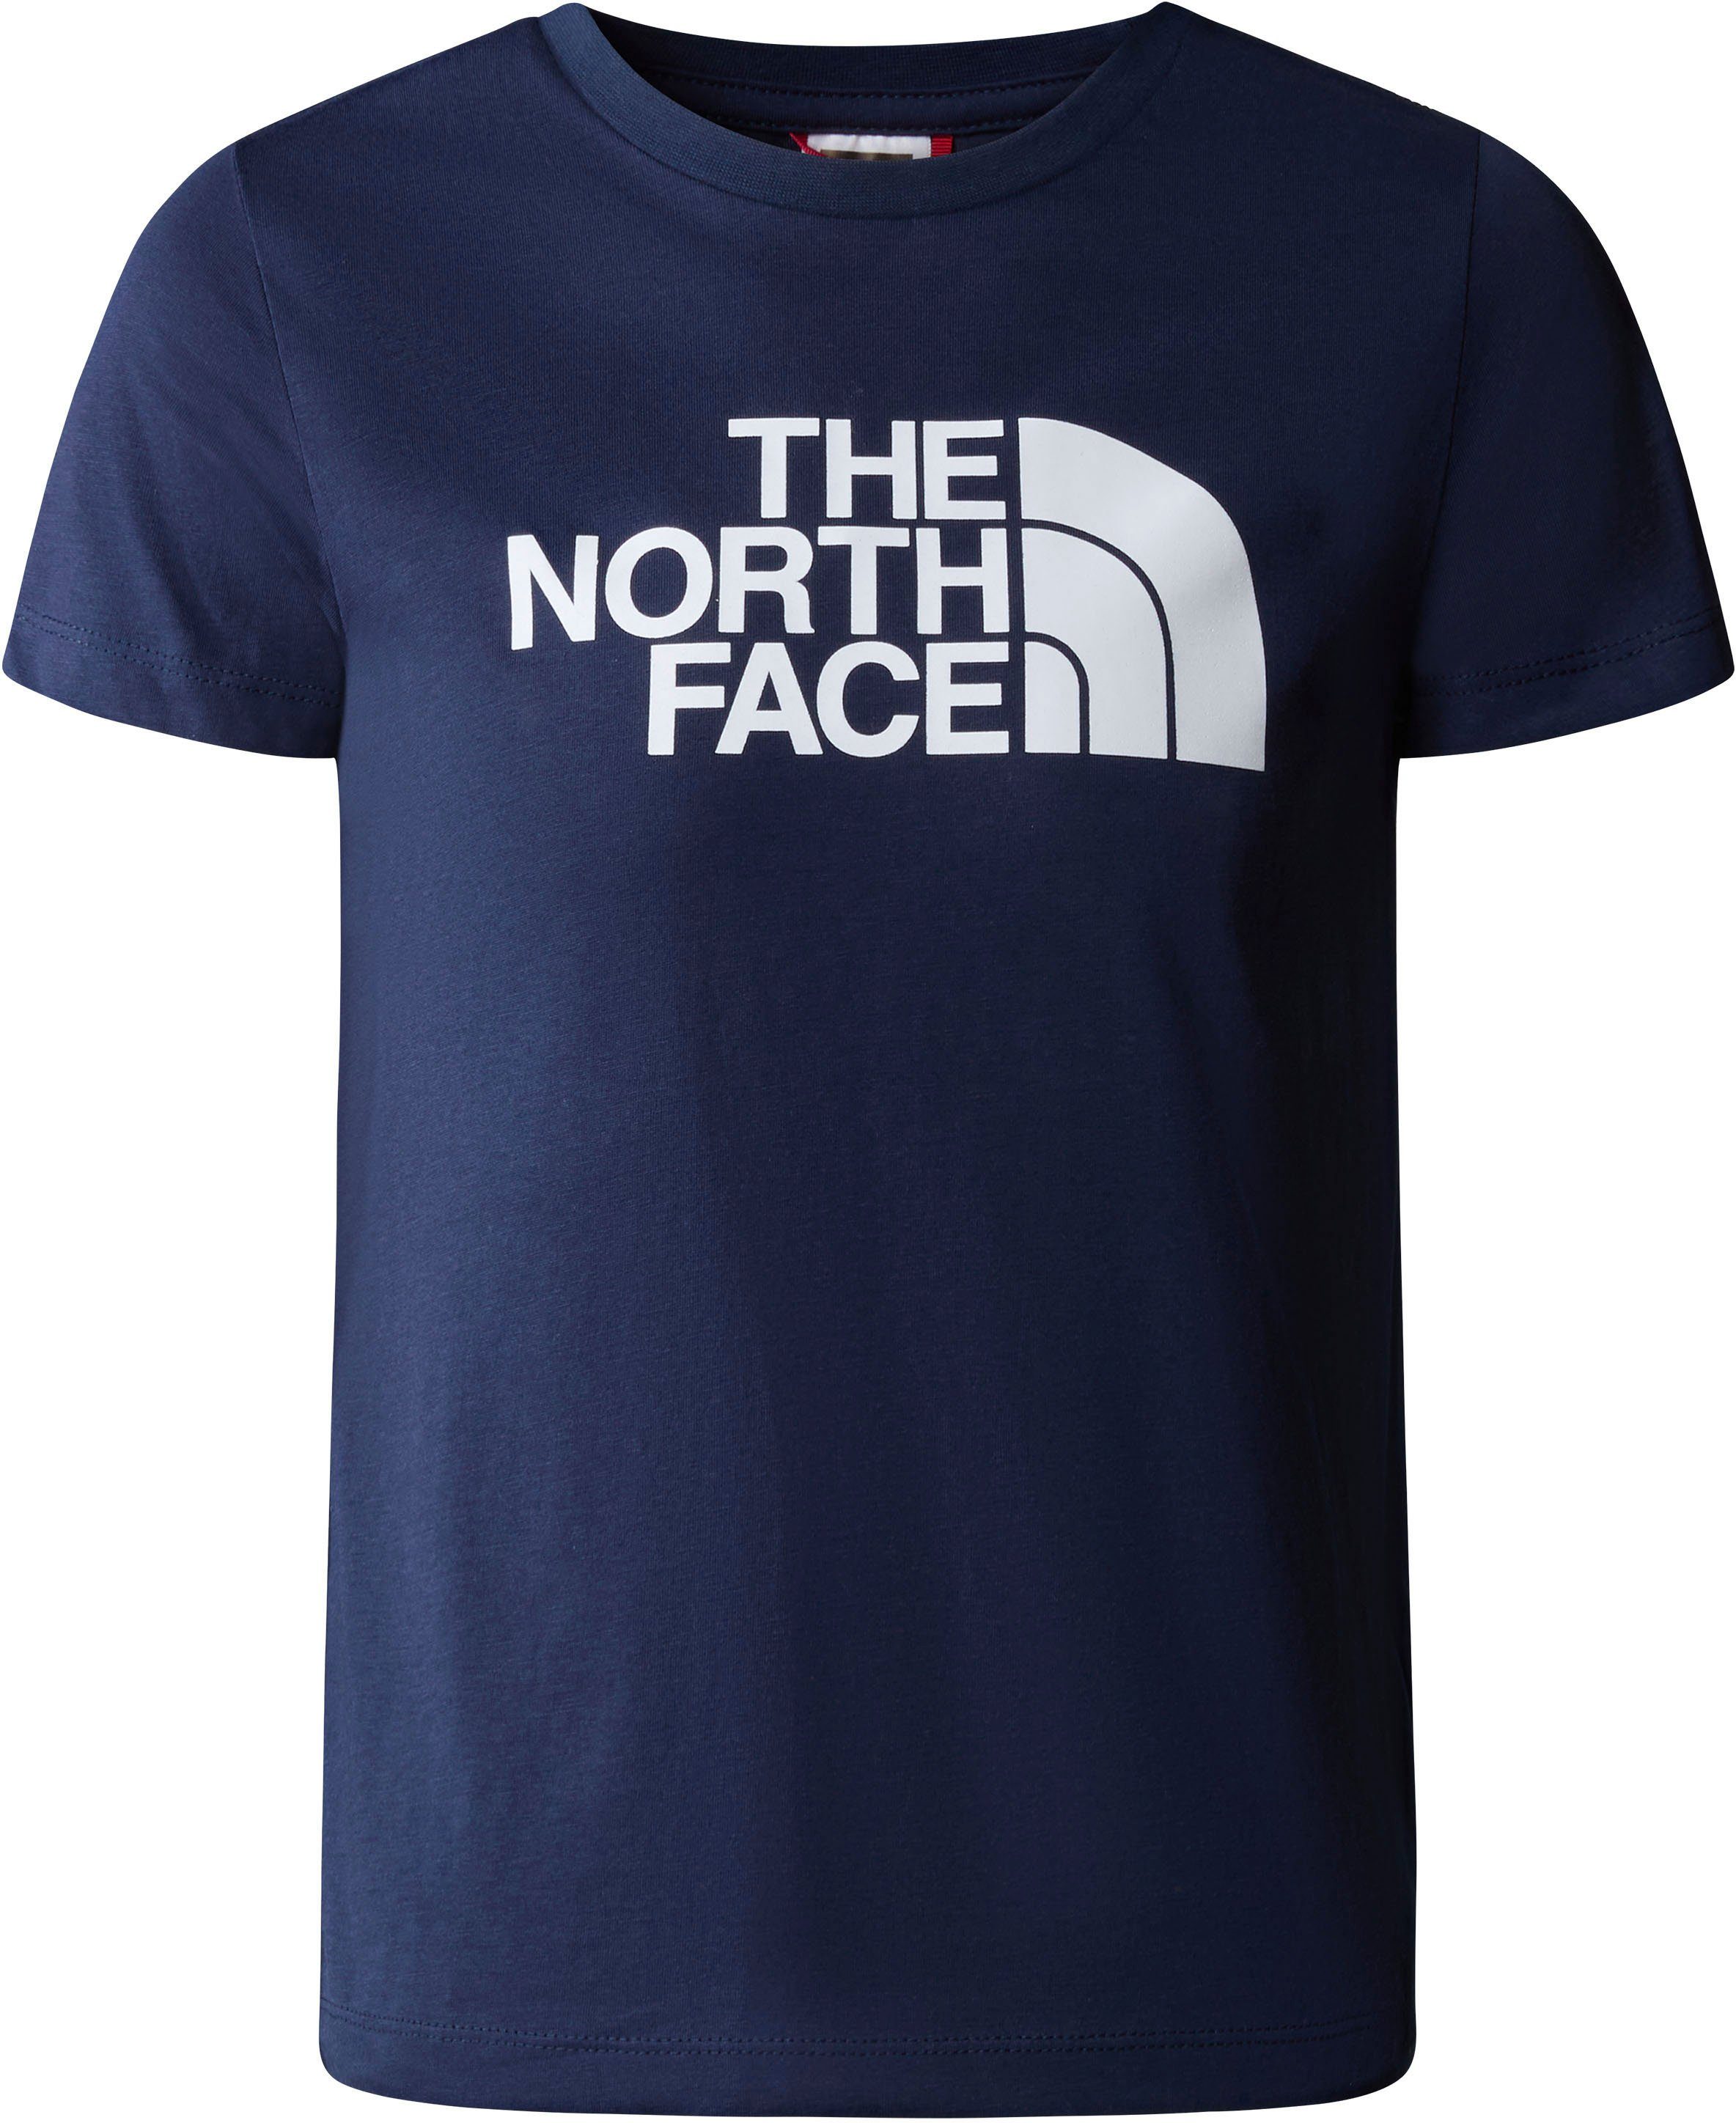 Sonderangebotspreis The North Face T-Shirt TEE für - Kinder EASY